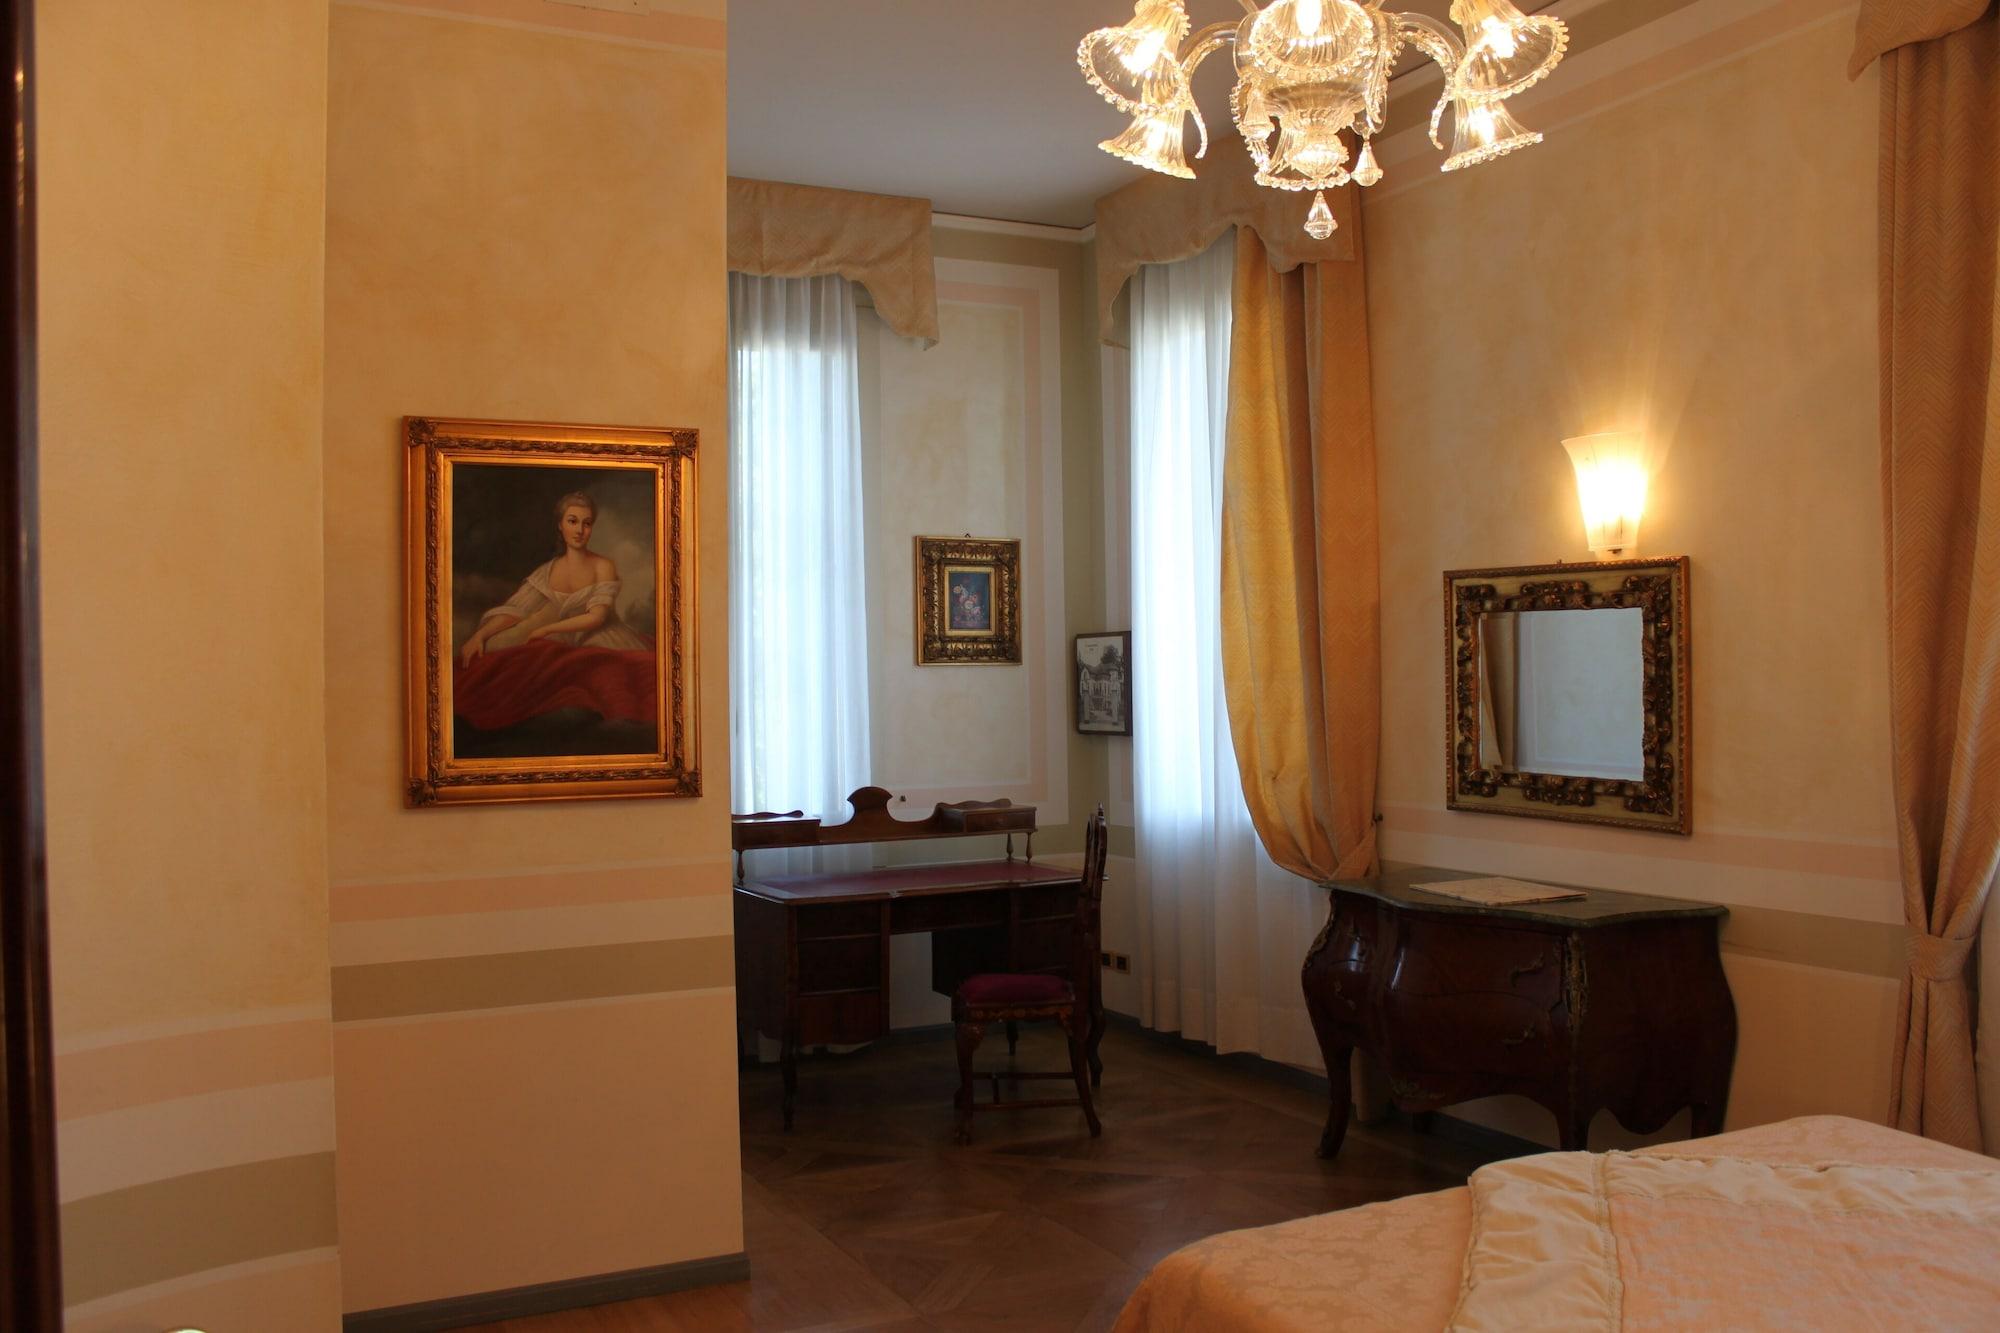 Hotel Villa Stucky Mogliano Veneto Exterior foto